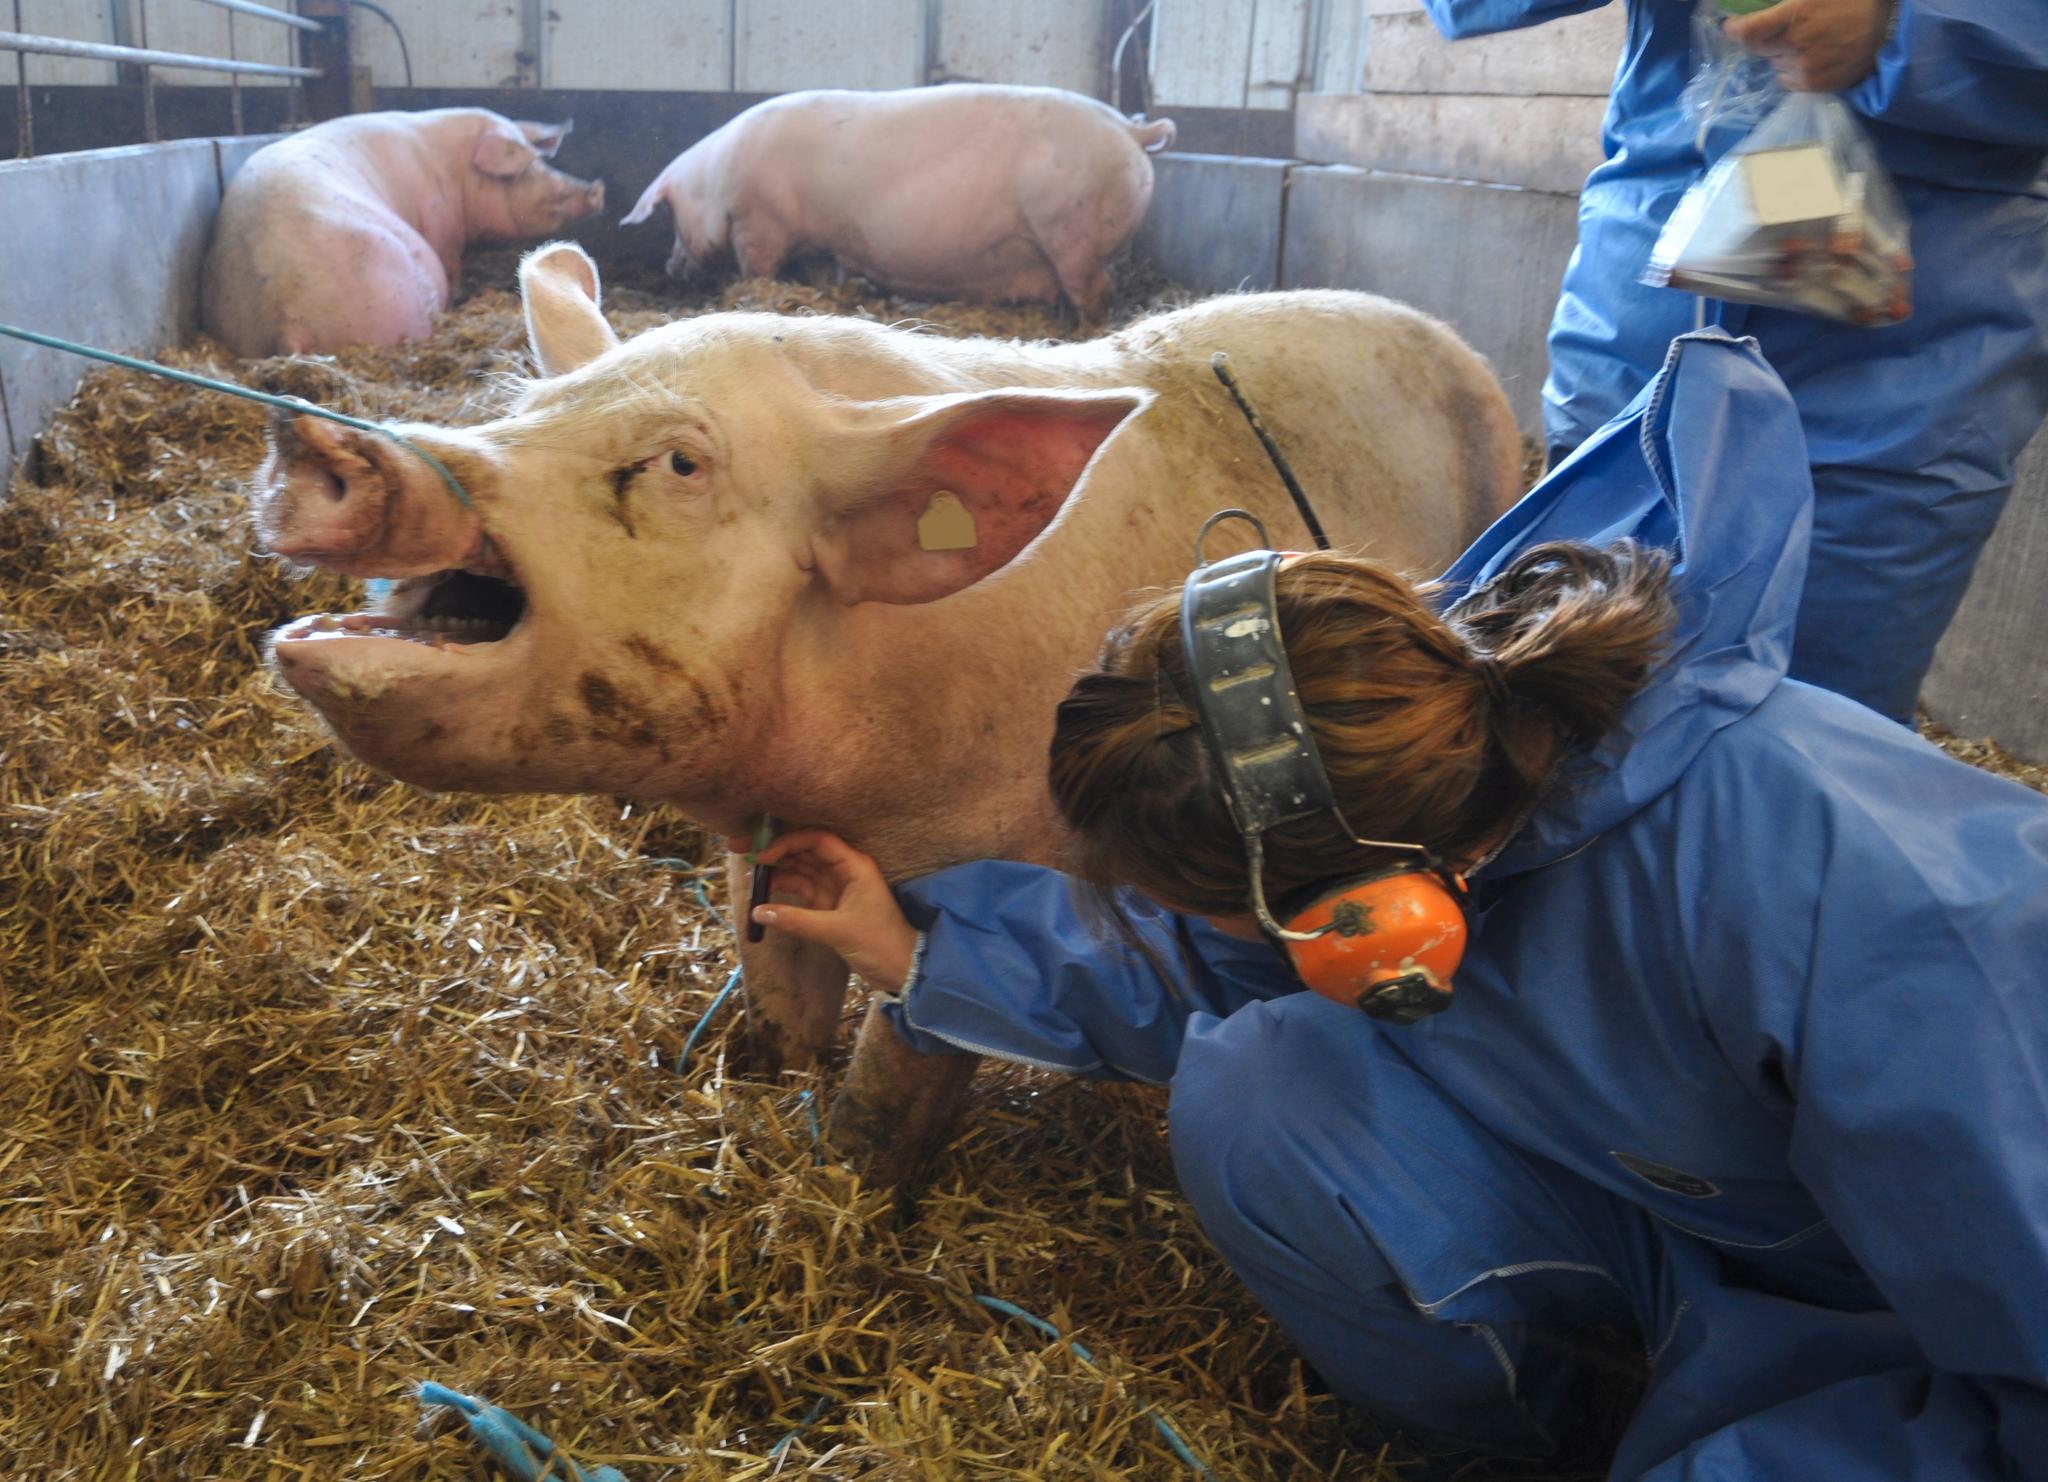 Mattilsynets inspektører har i år sjekket flere grisefjøs etter å ha fått tips fra slakterier som har mottatt dyr i dårlig forfatning. 